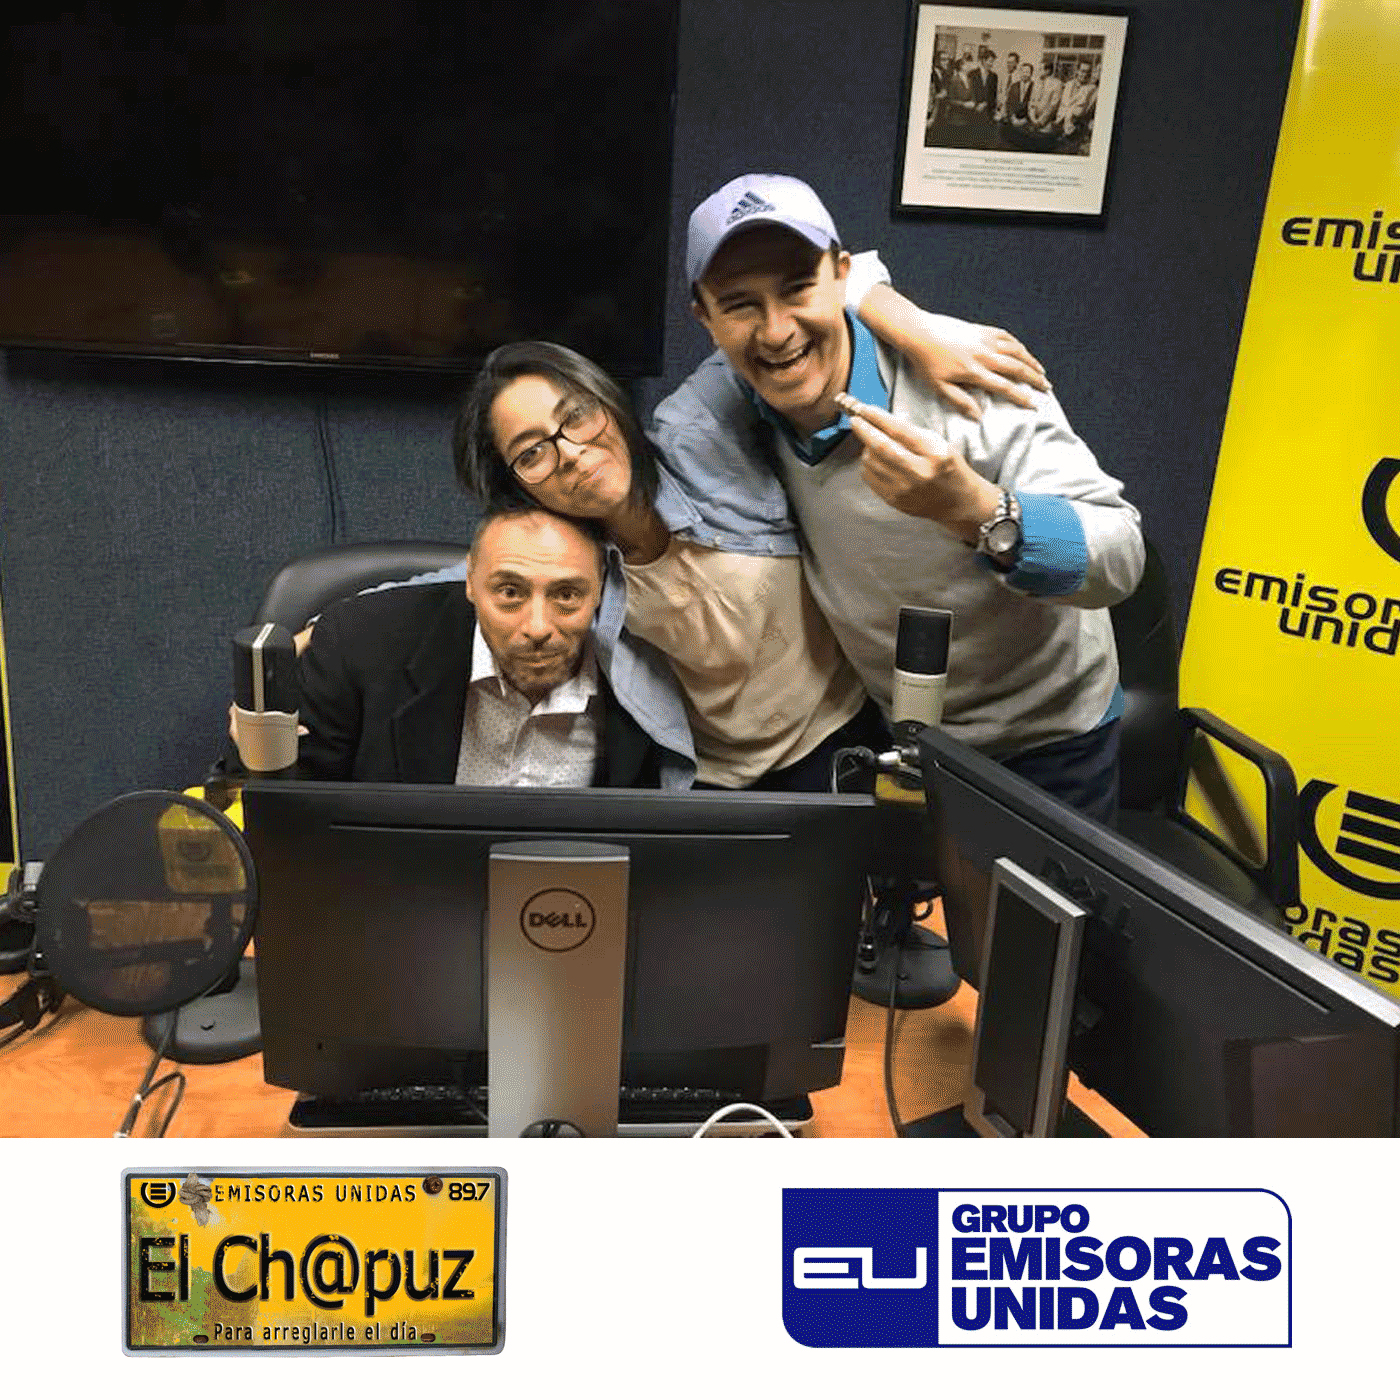 EC032 - El Chapuz - Emisoras unidas - #ResumenDeMayo